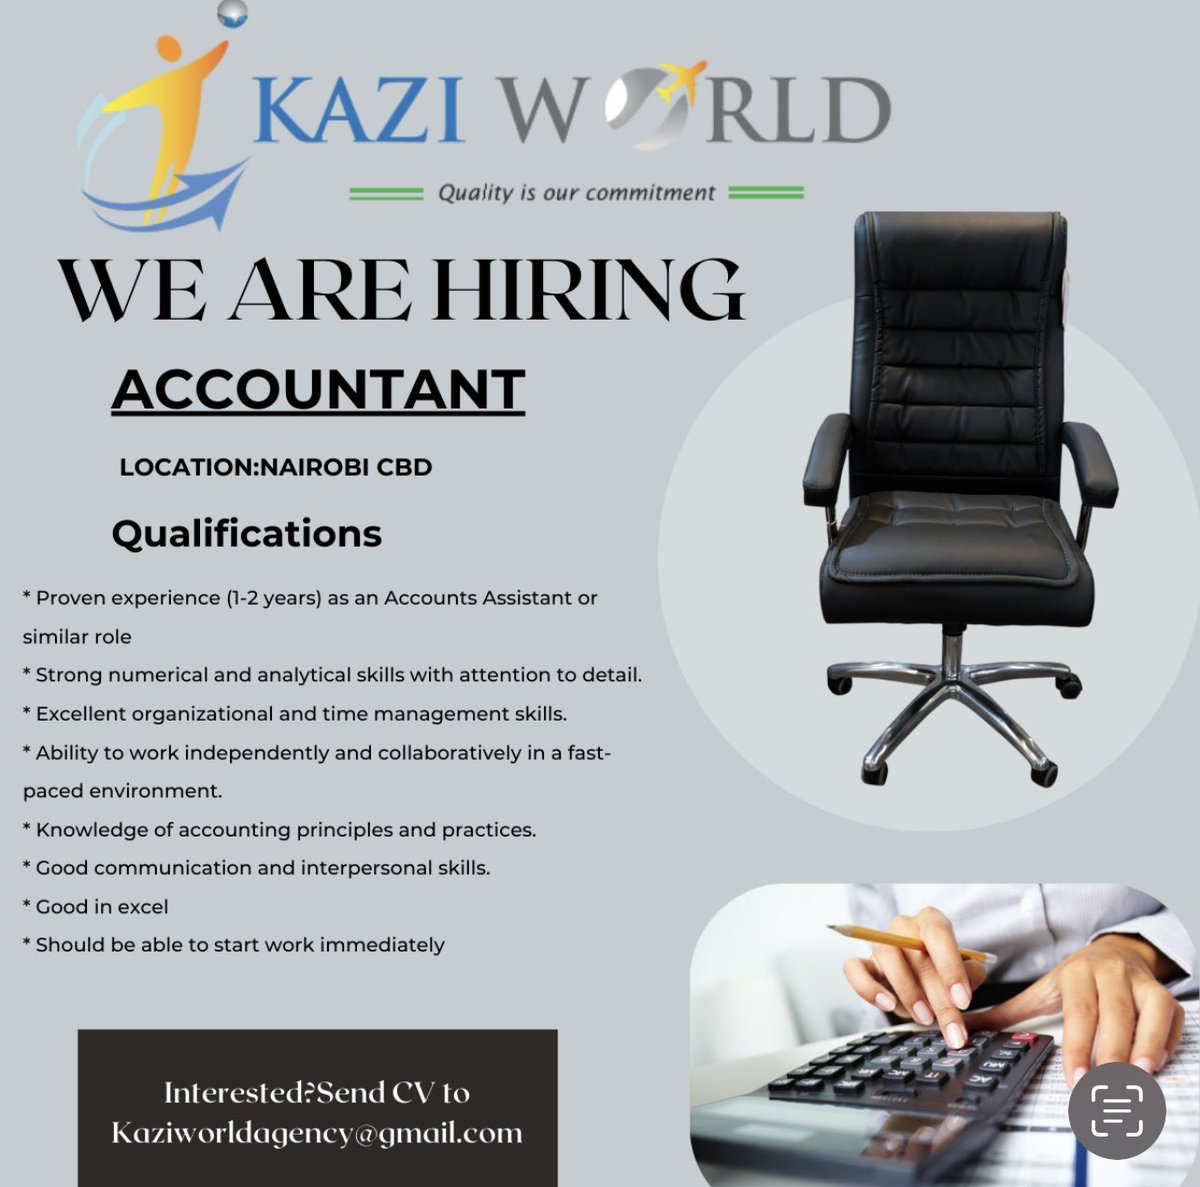 Accountant needed.
#IkoKaziKE